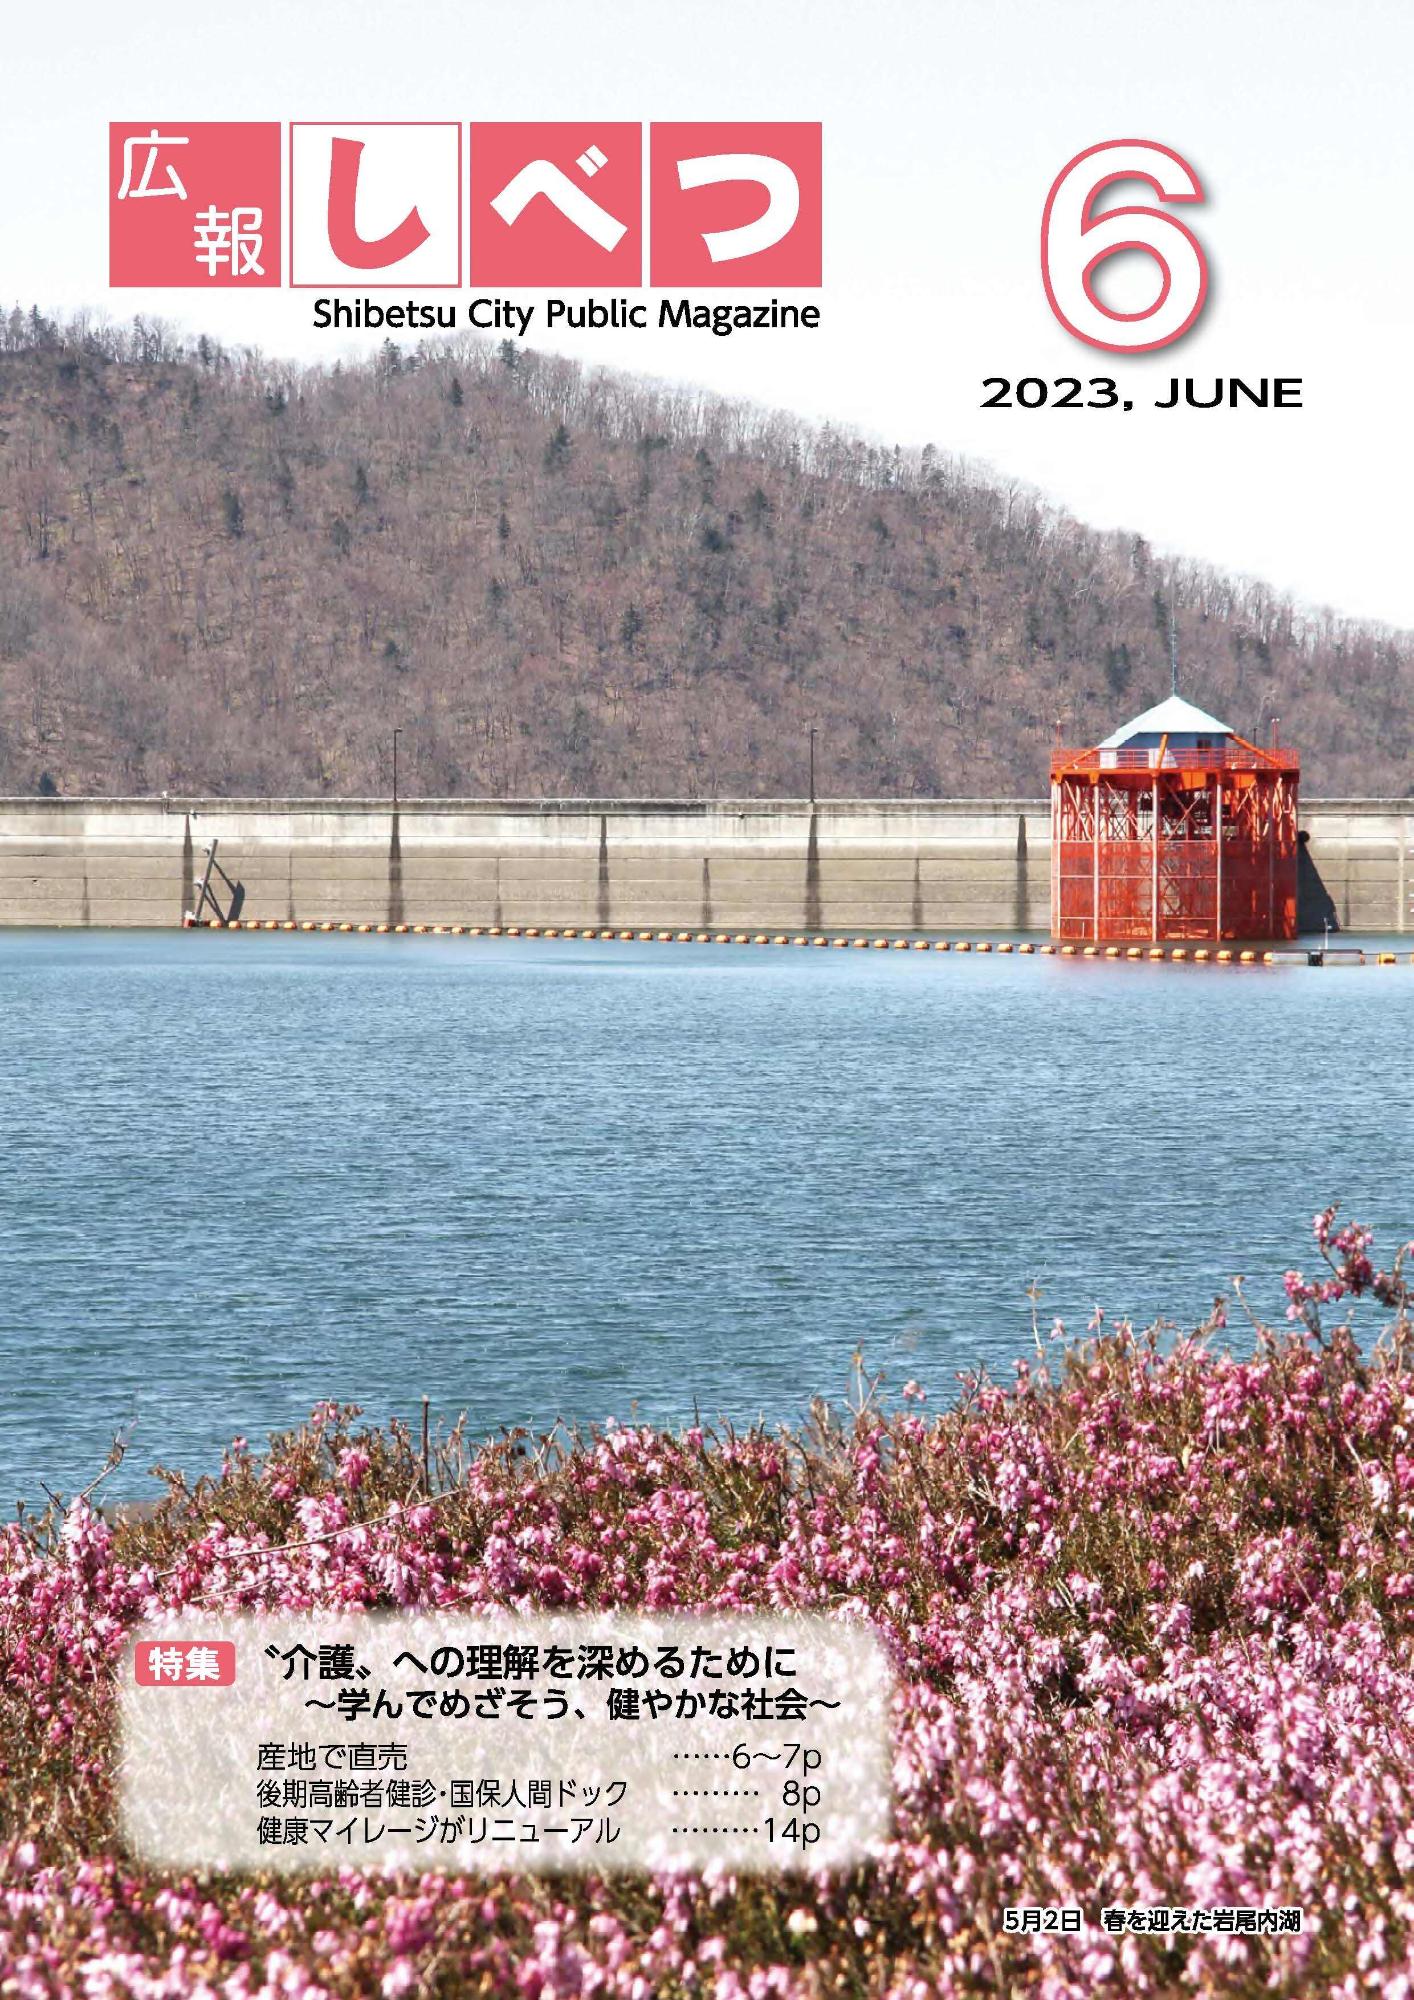 広報しべつ2023年6月号の表紙。岩尾内湖の写真が使われている。